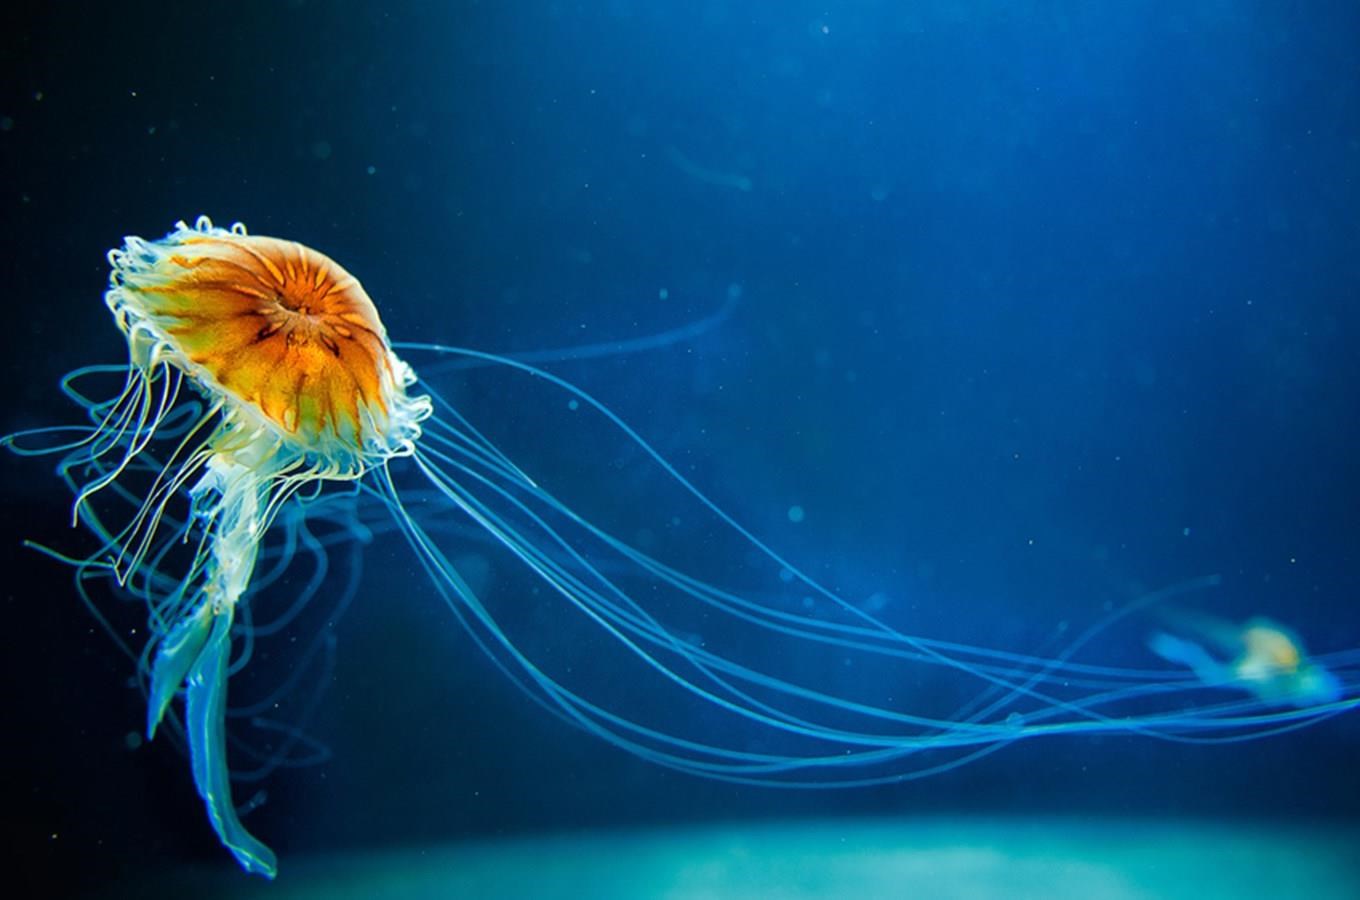 Kudy z nudy - Svět Medúz Arkády Pankrác - největší medúzárium v Evropě